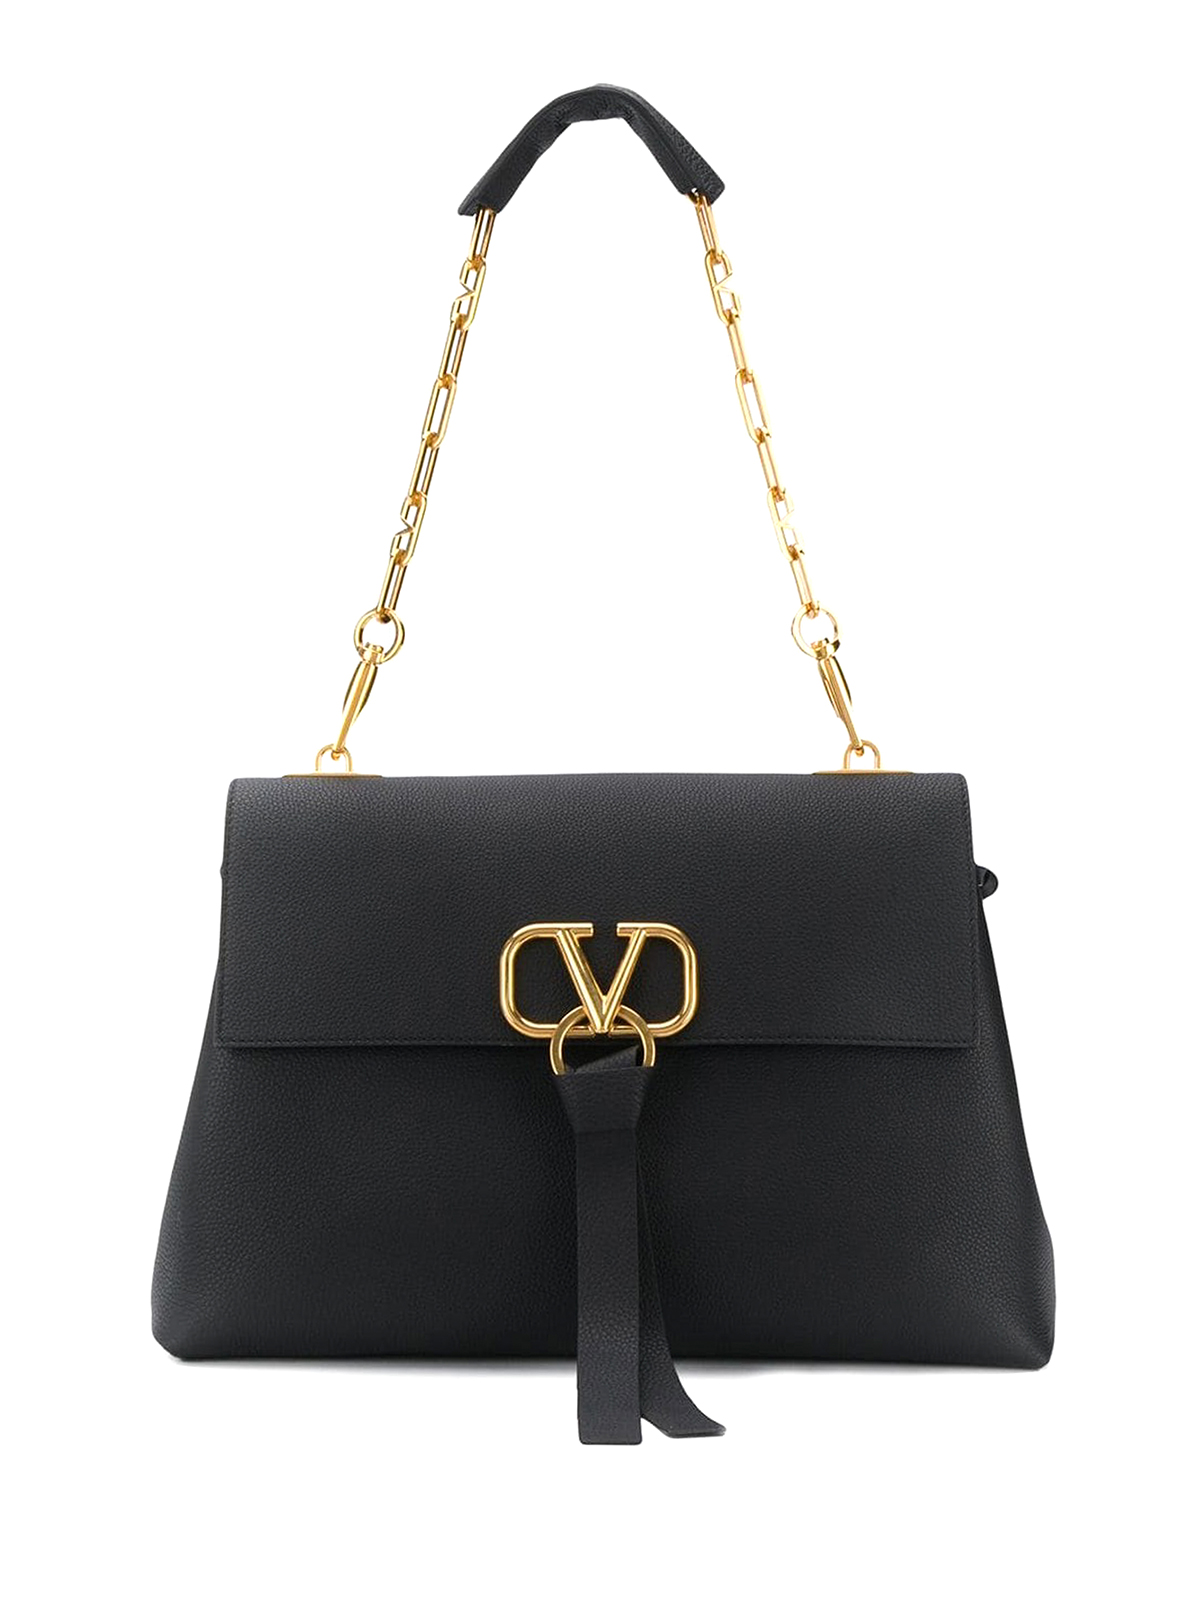 Shoulder bags Valentino Garavani - VRing black leather bag